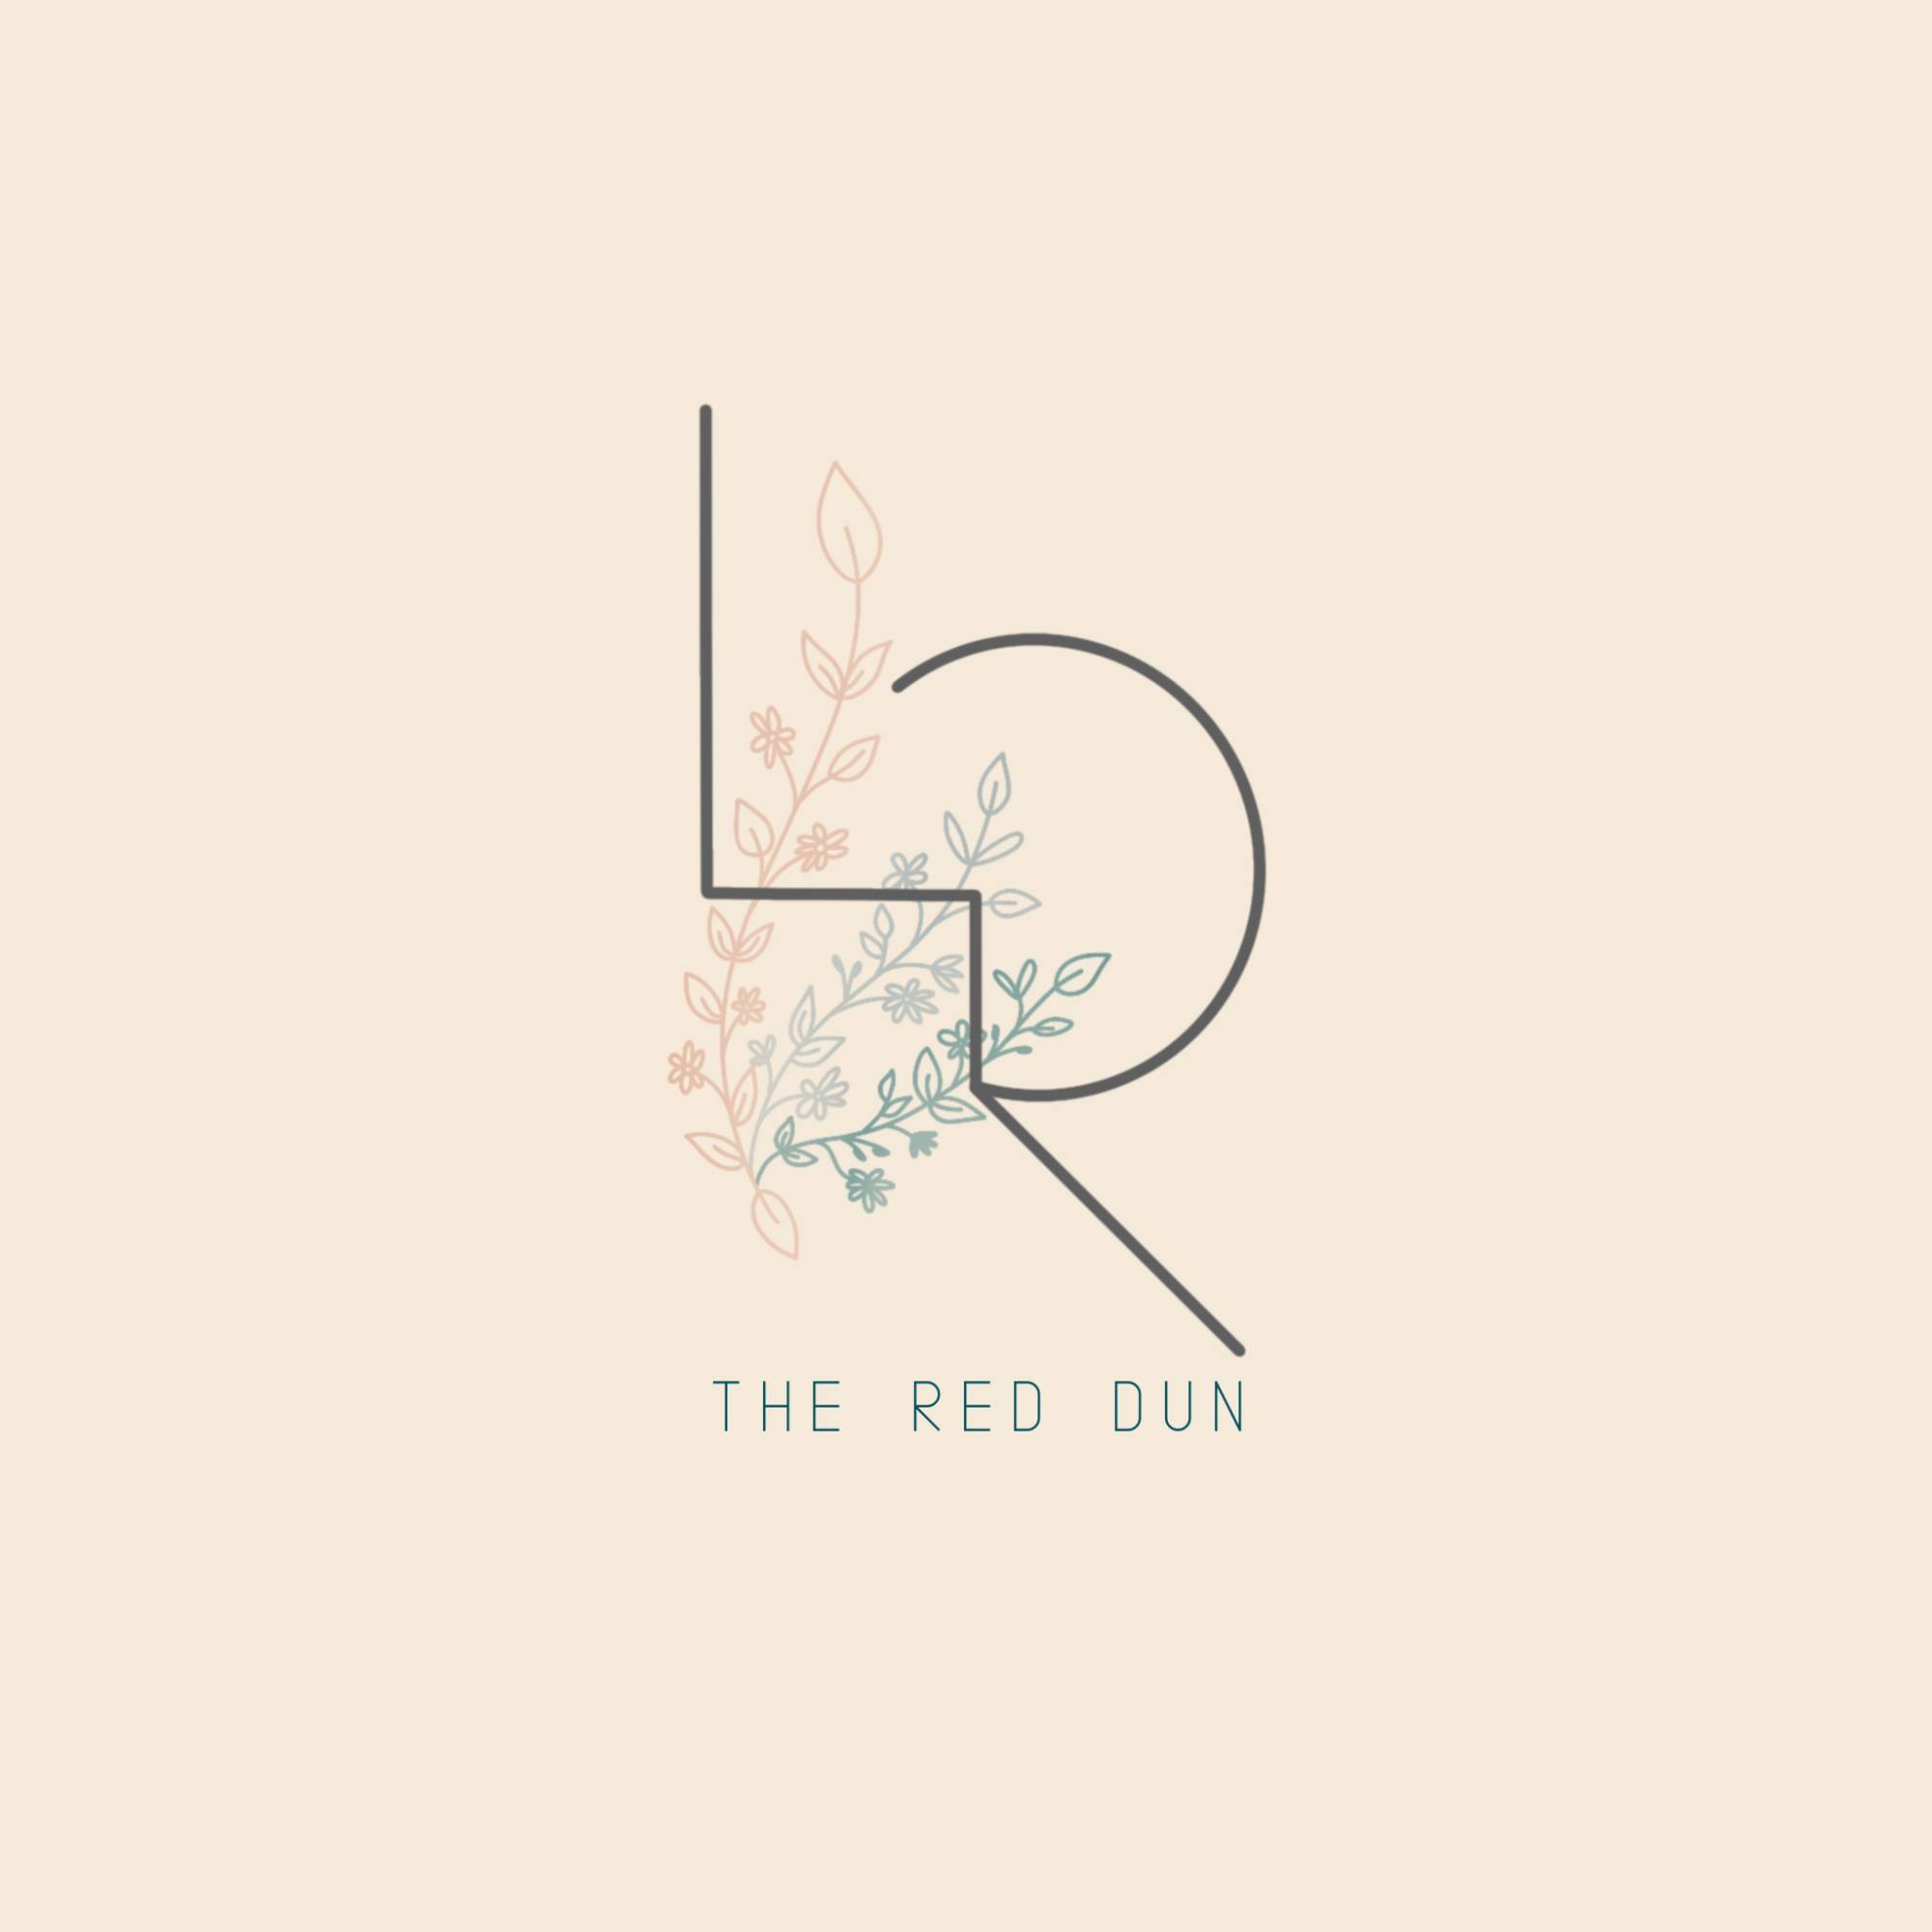 The Red Dun